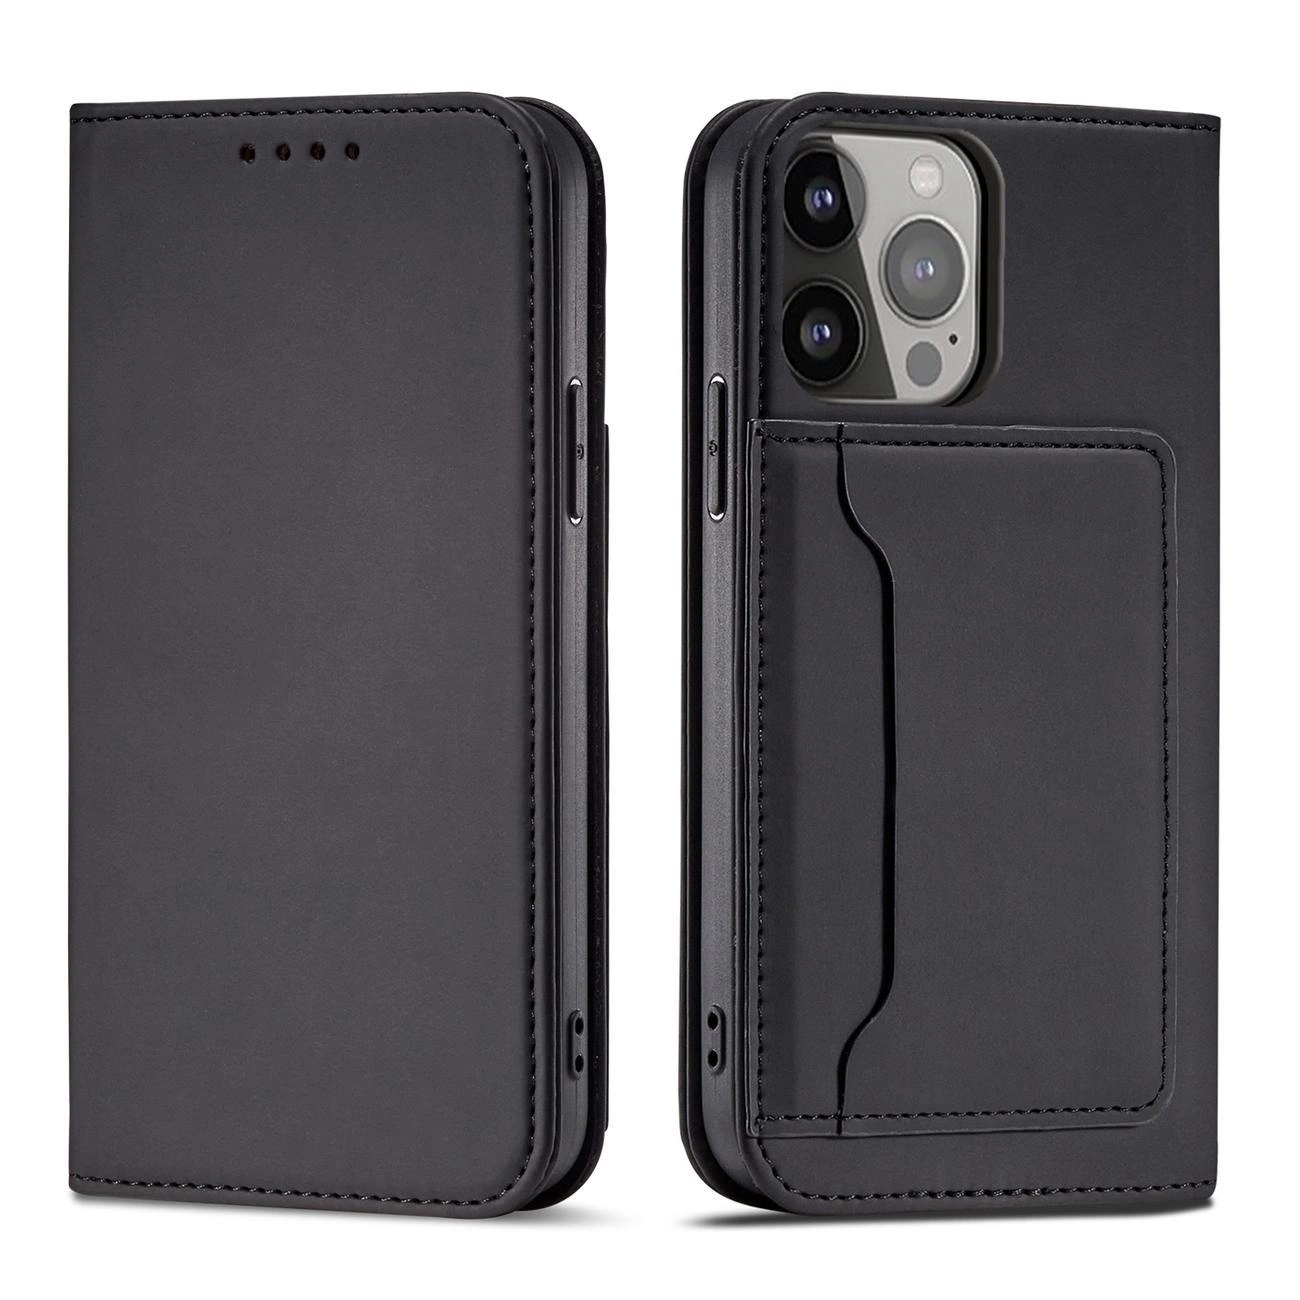 Hurtel Magnet Card Case pro iPhone 13 card wallet case card holder black